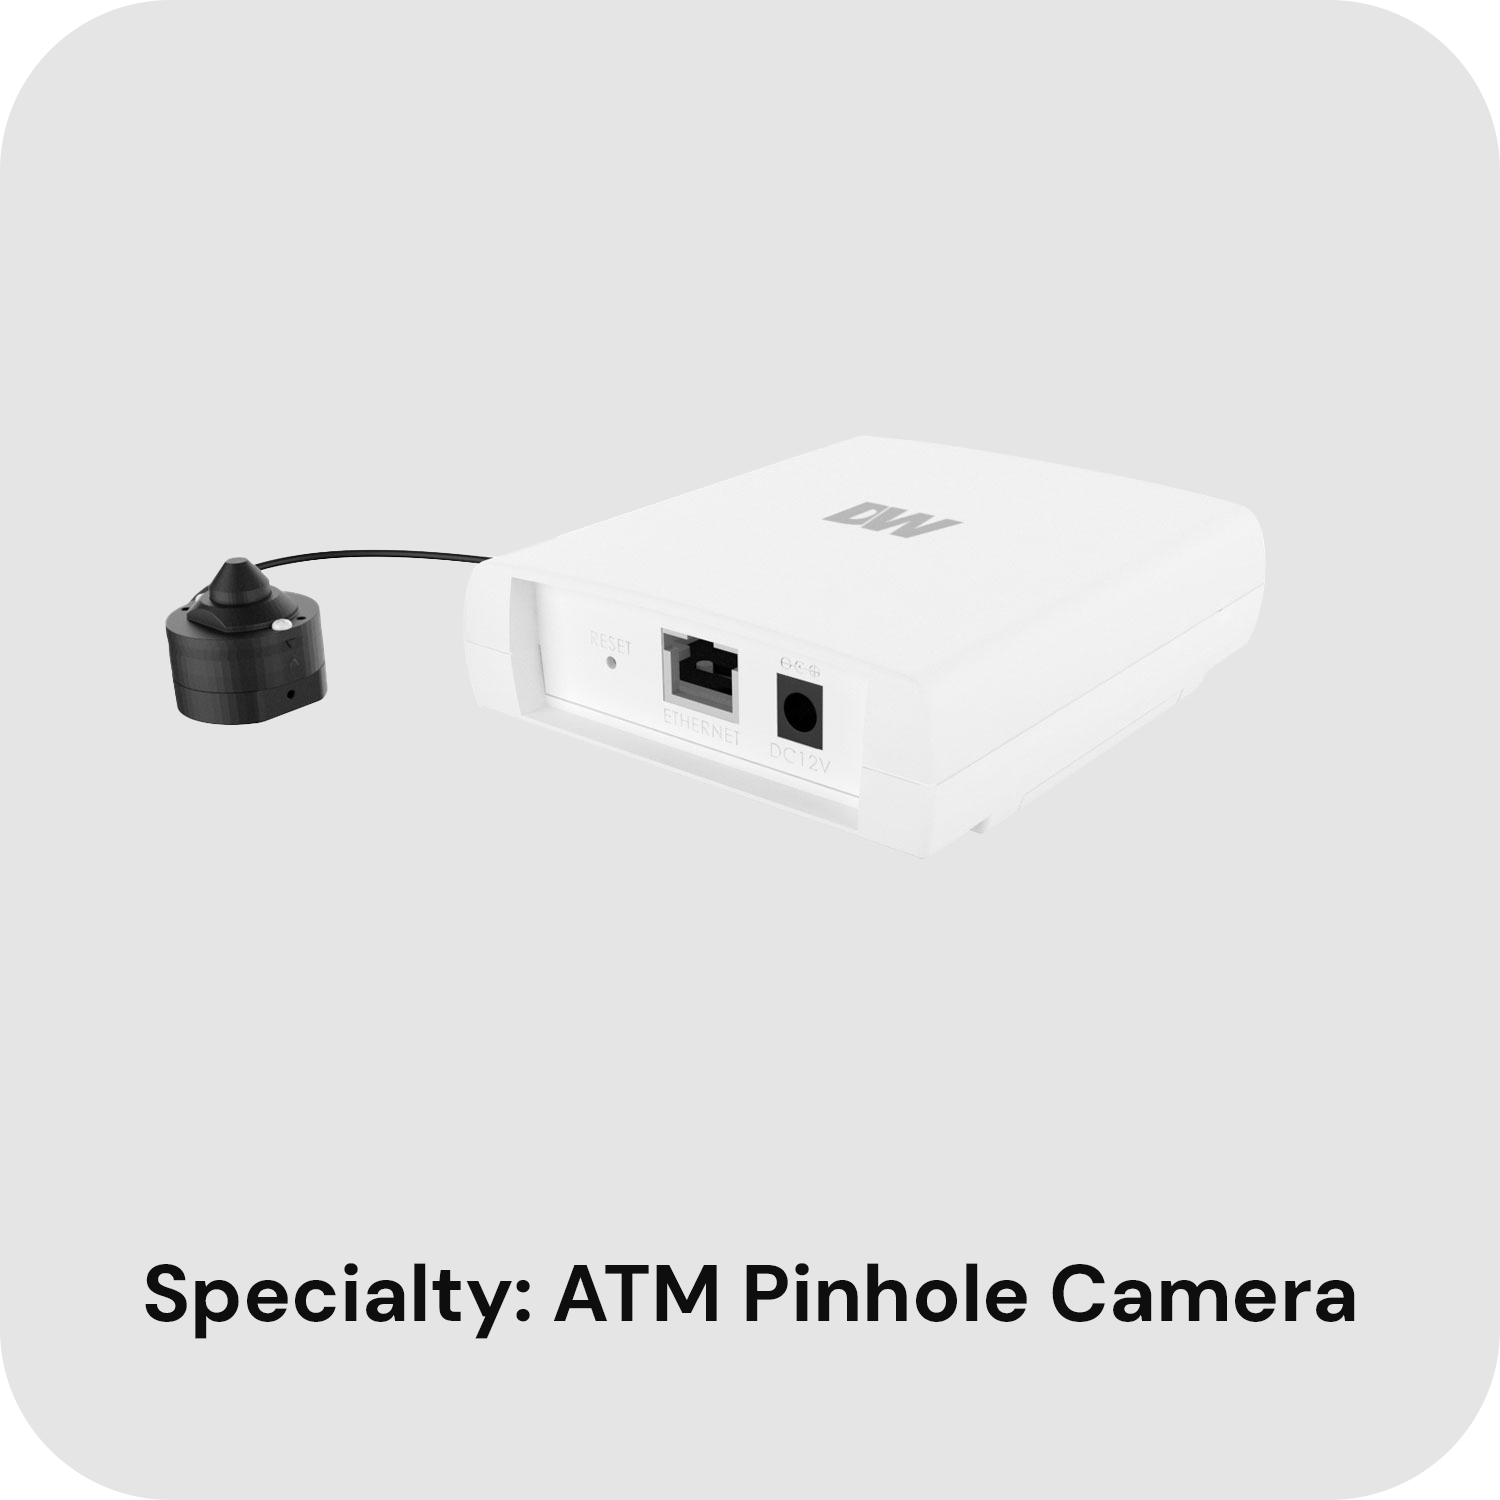 ATM Pinhole Camera